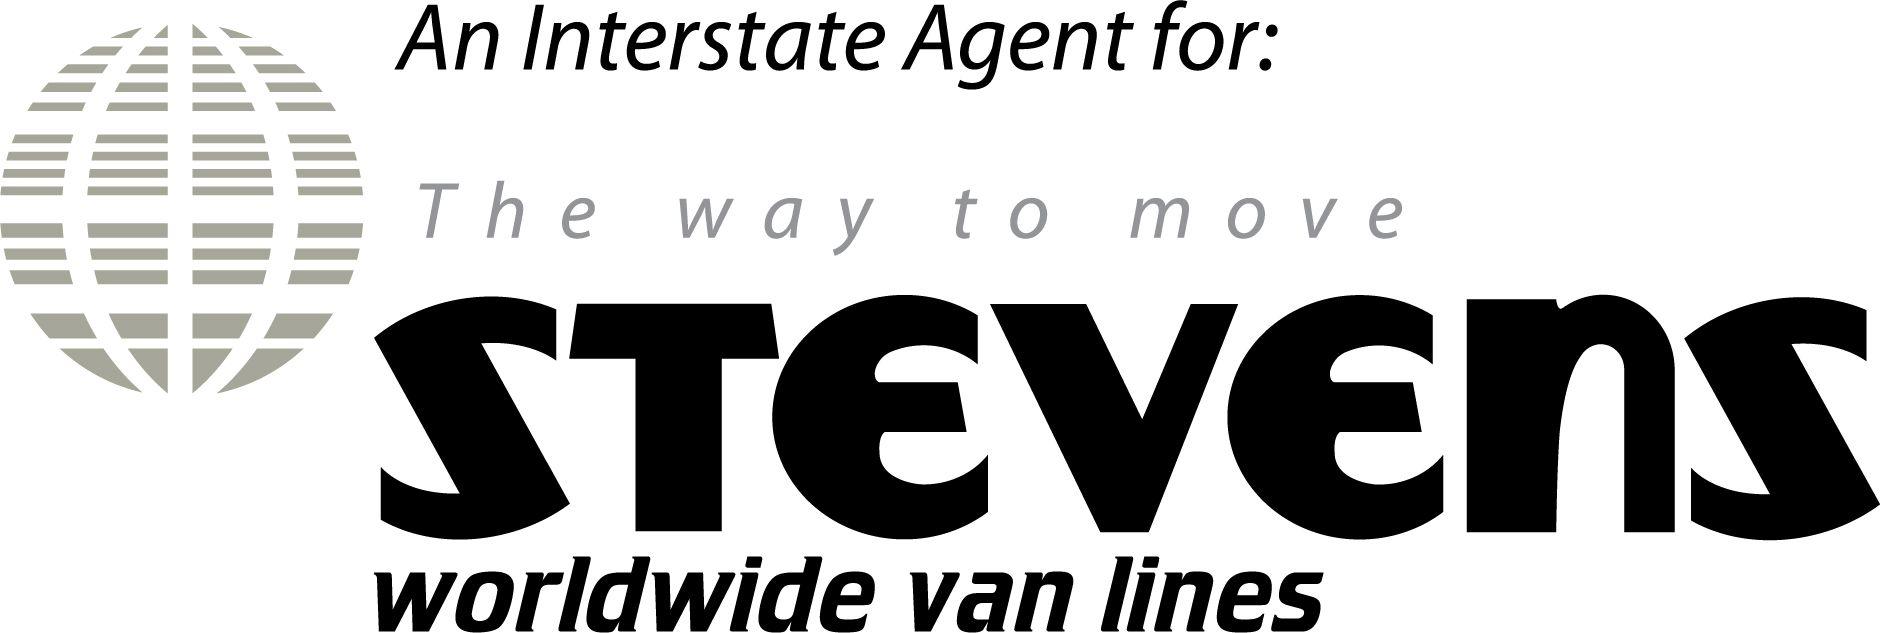 Stevens Logo - Interstate Agent Logo | Stevens Worldwide Van Lines